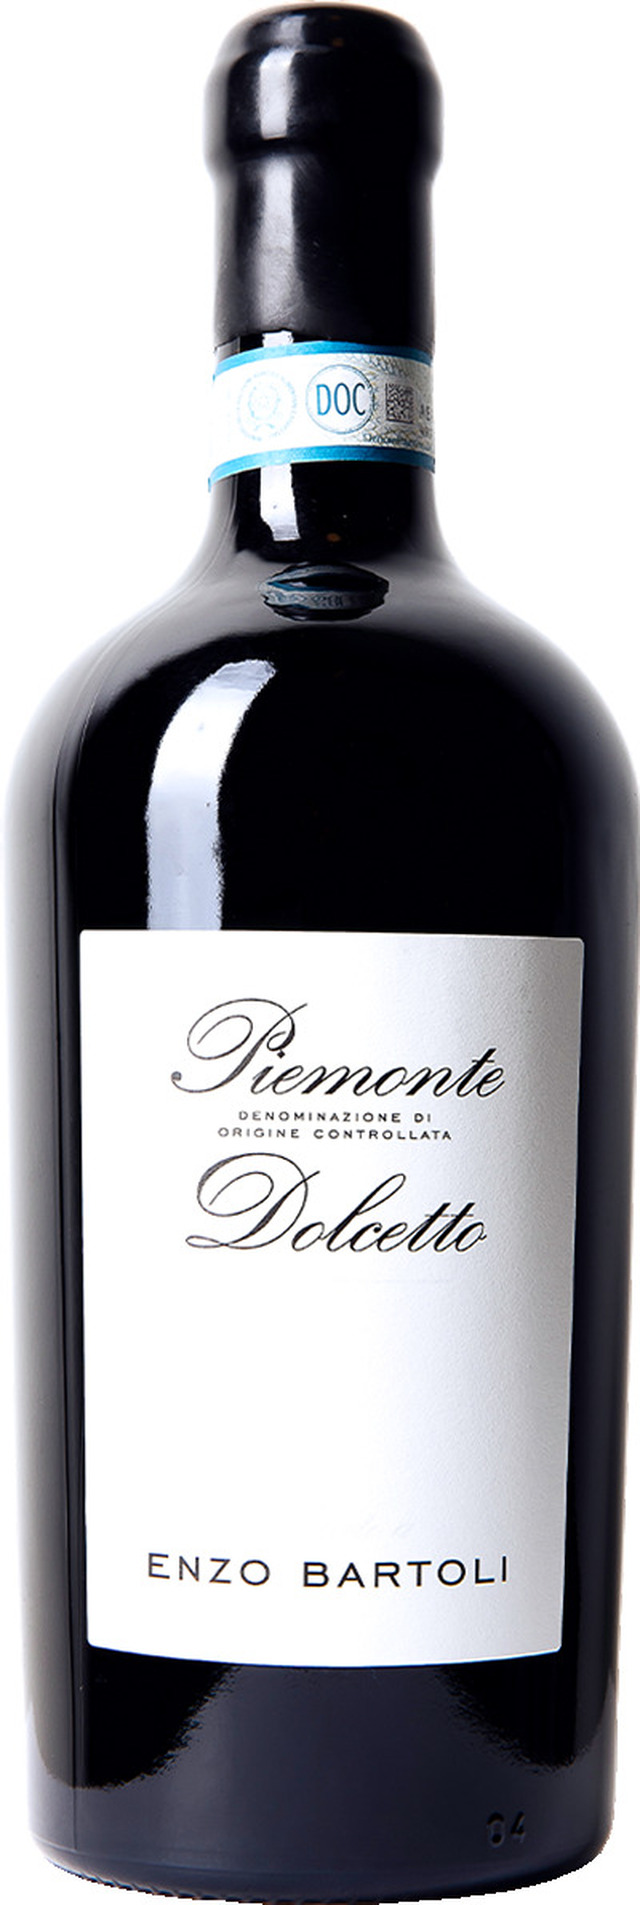 Elegant och drickvänlig Dolcetto från superårgången 2017!